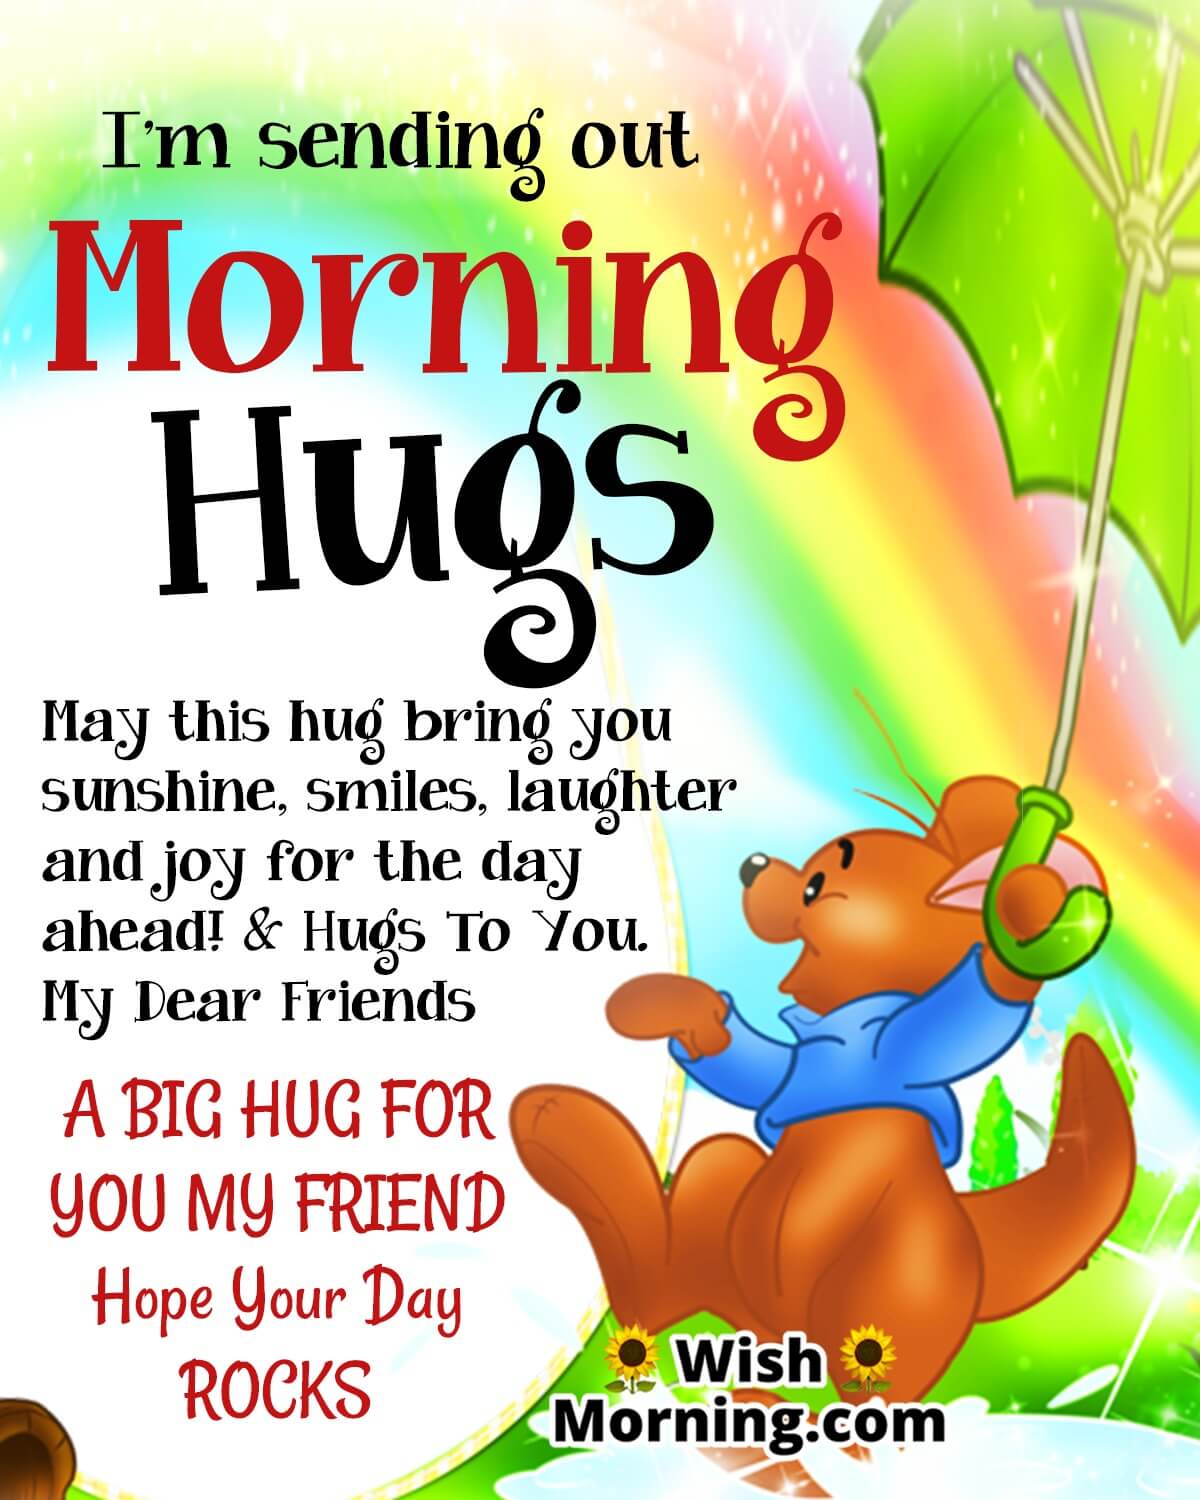 Morning Hugs For Friends